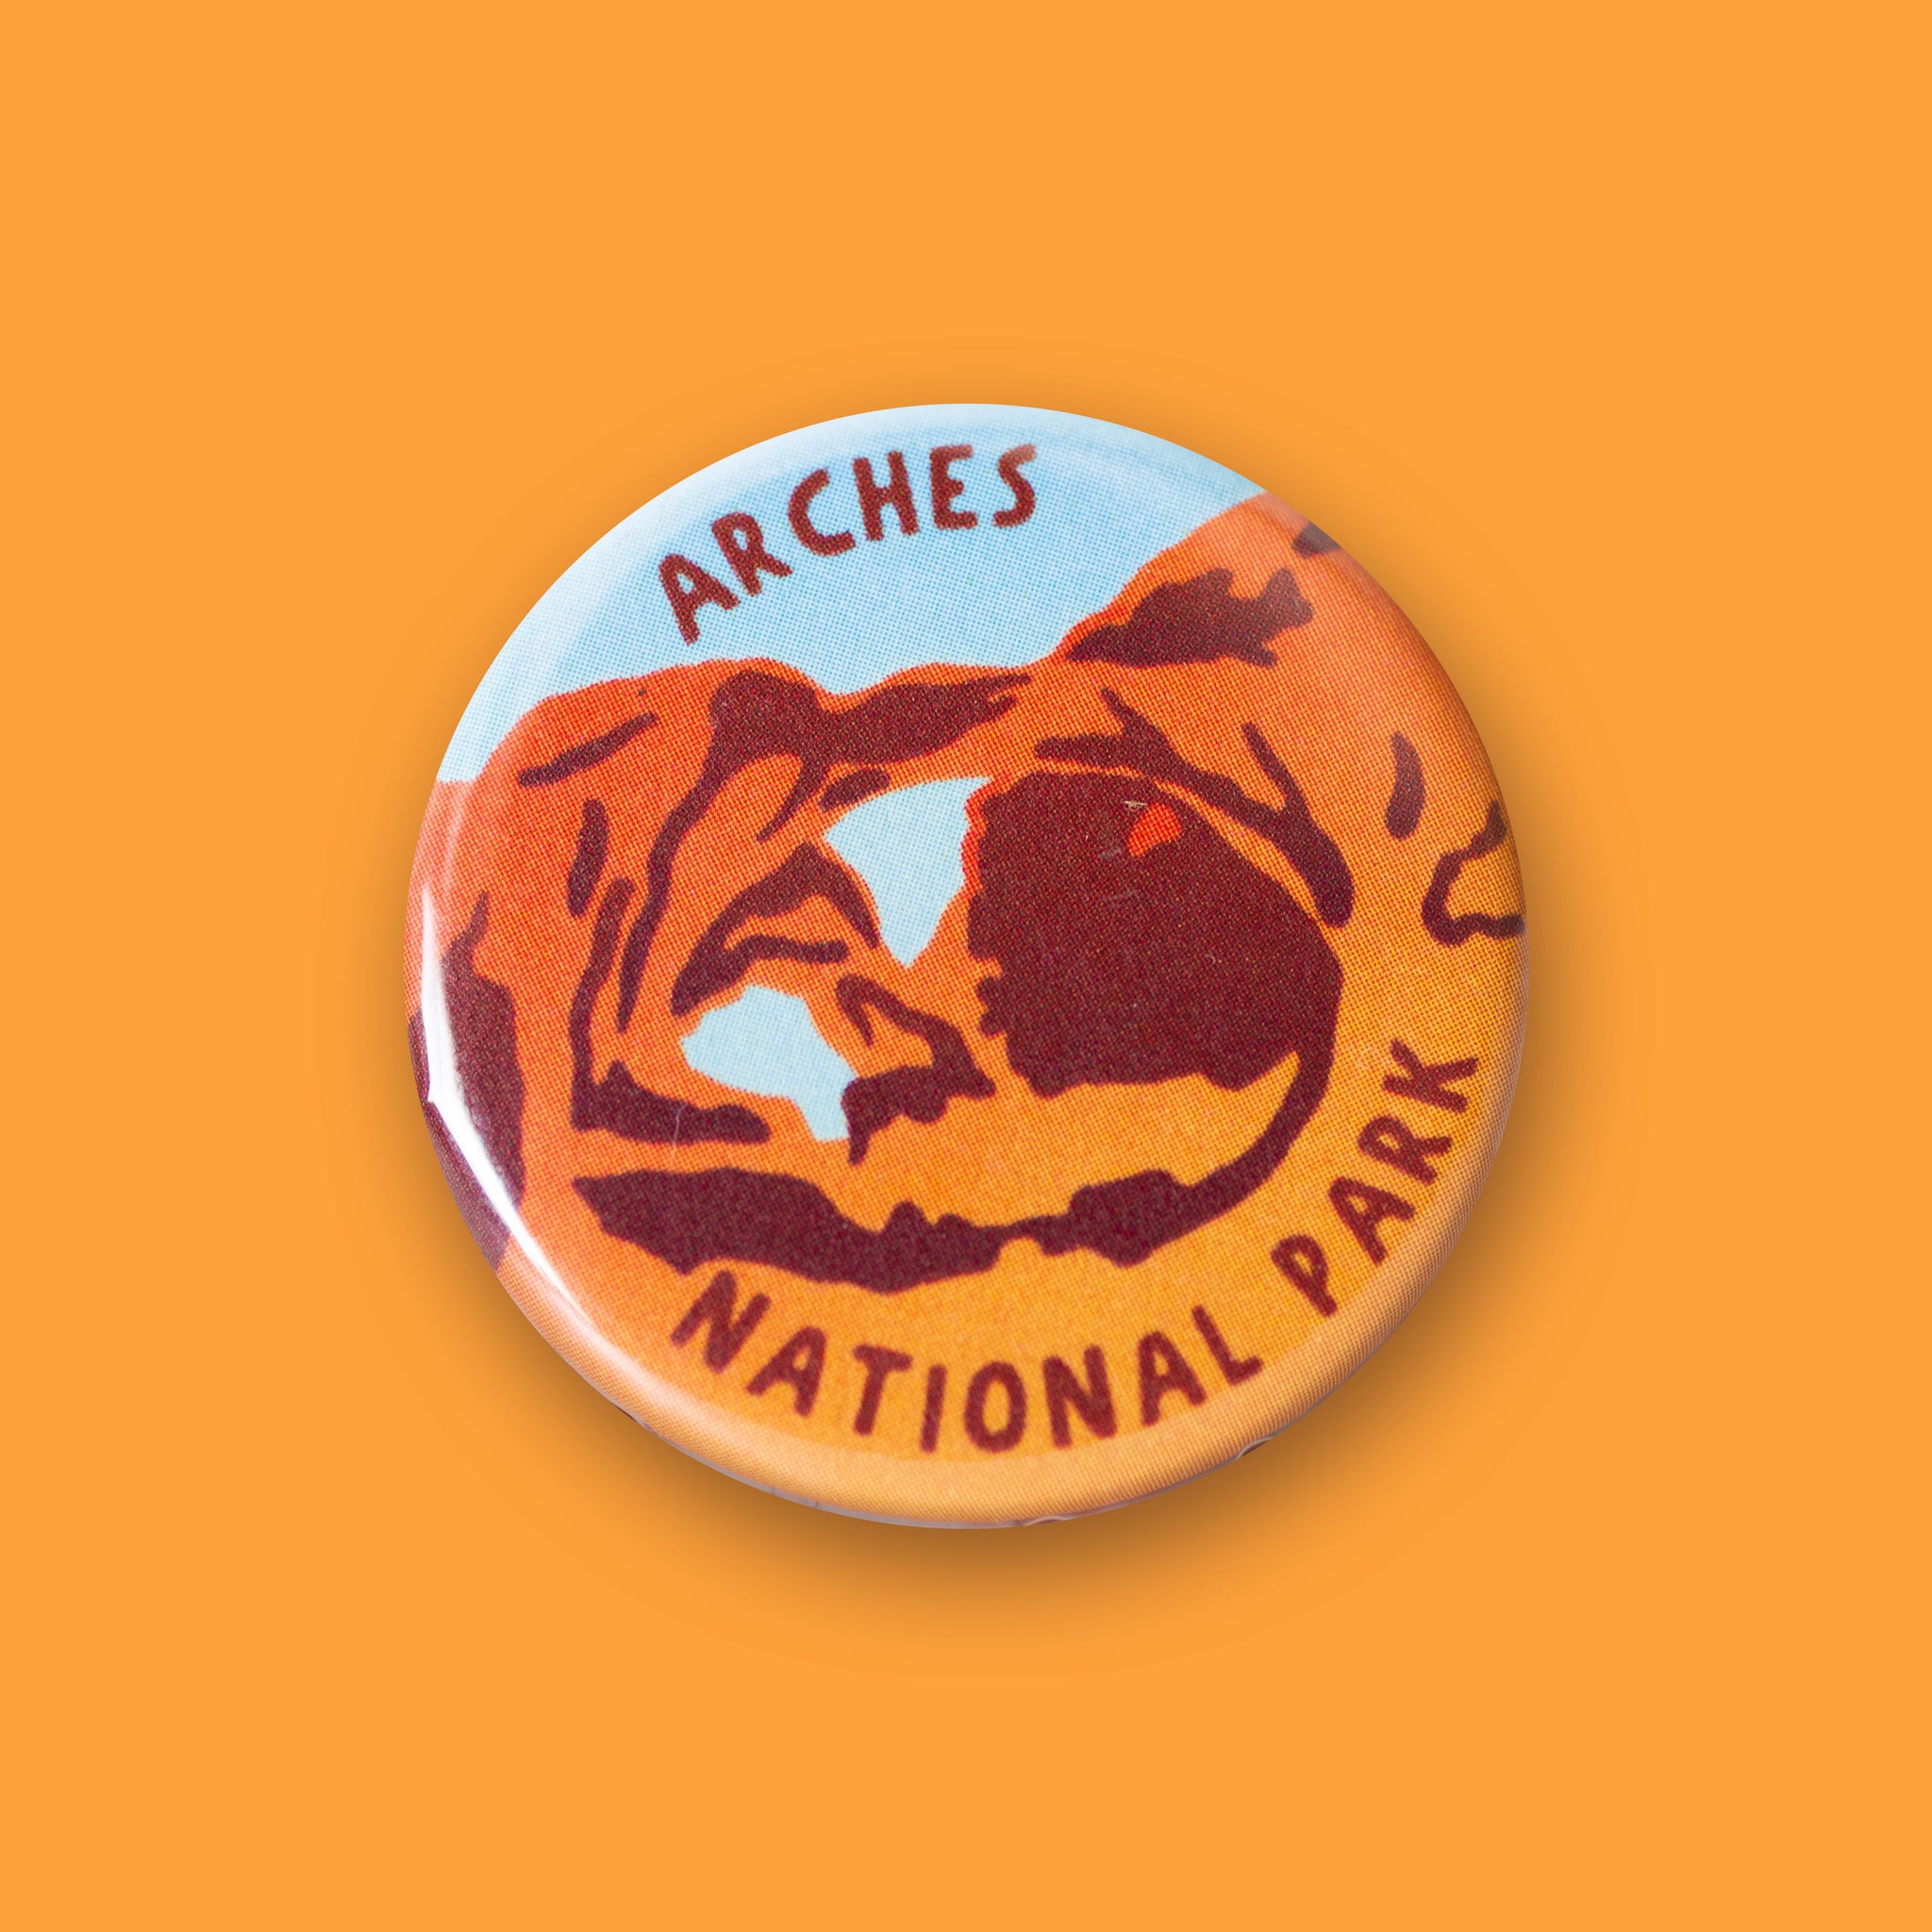 Arches National Park Merit Badge Button